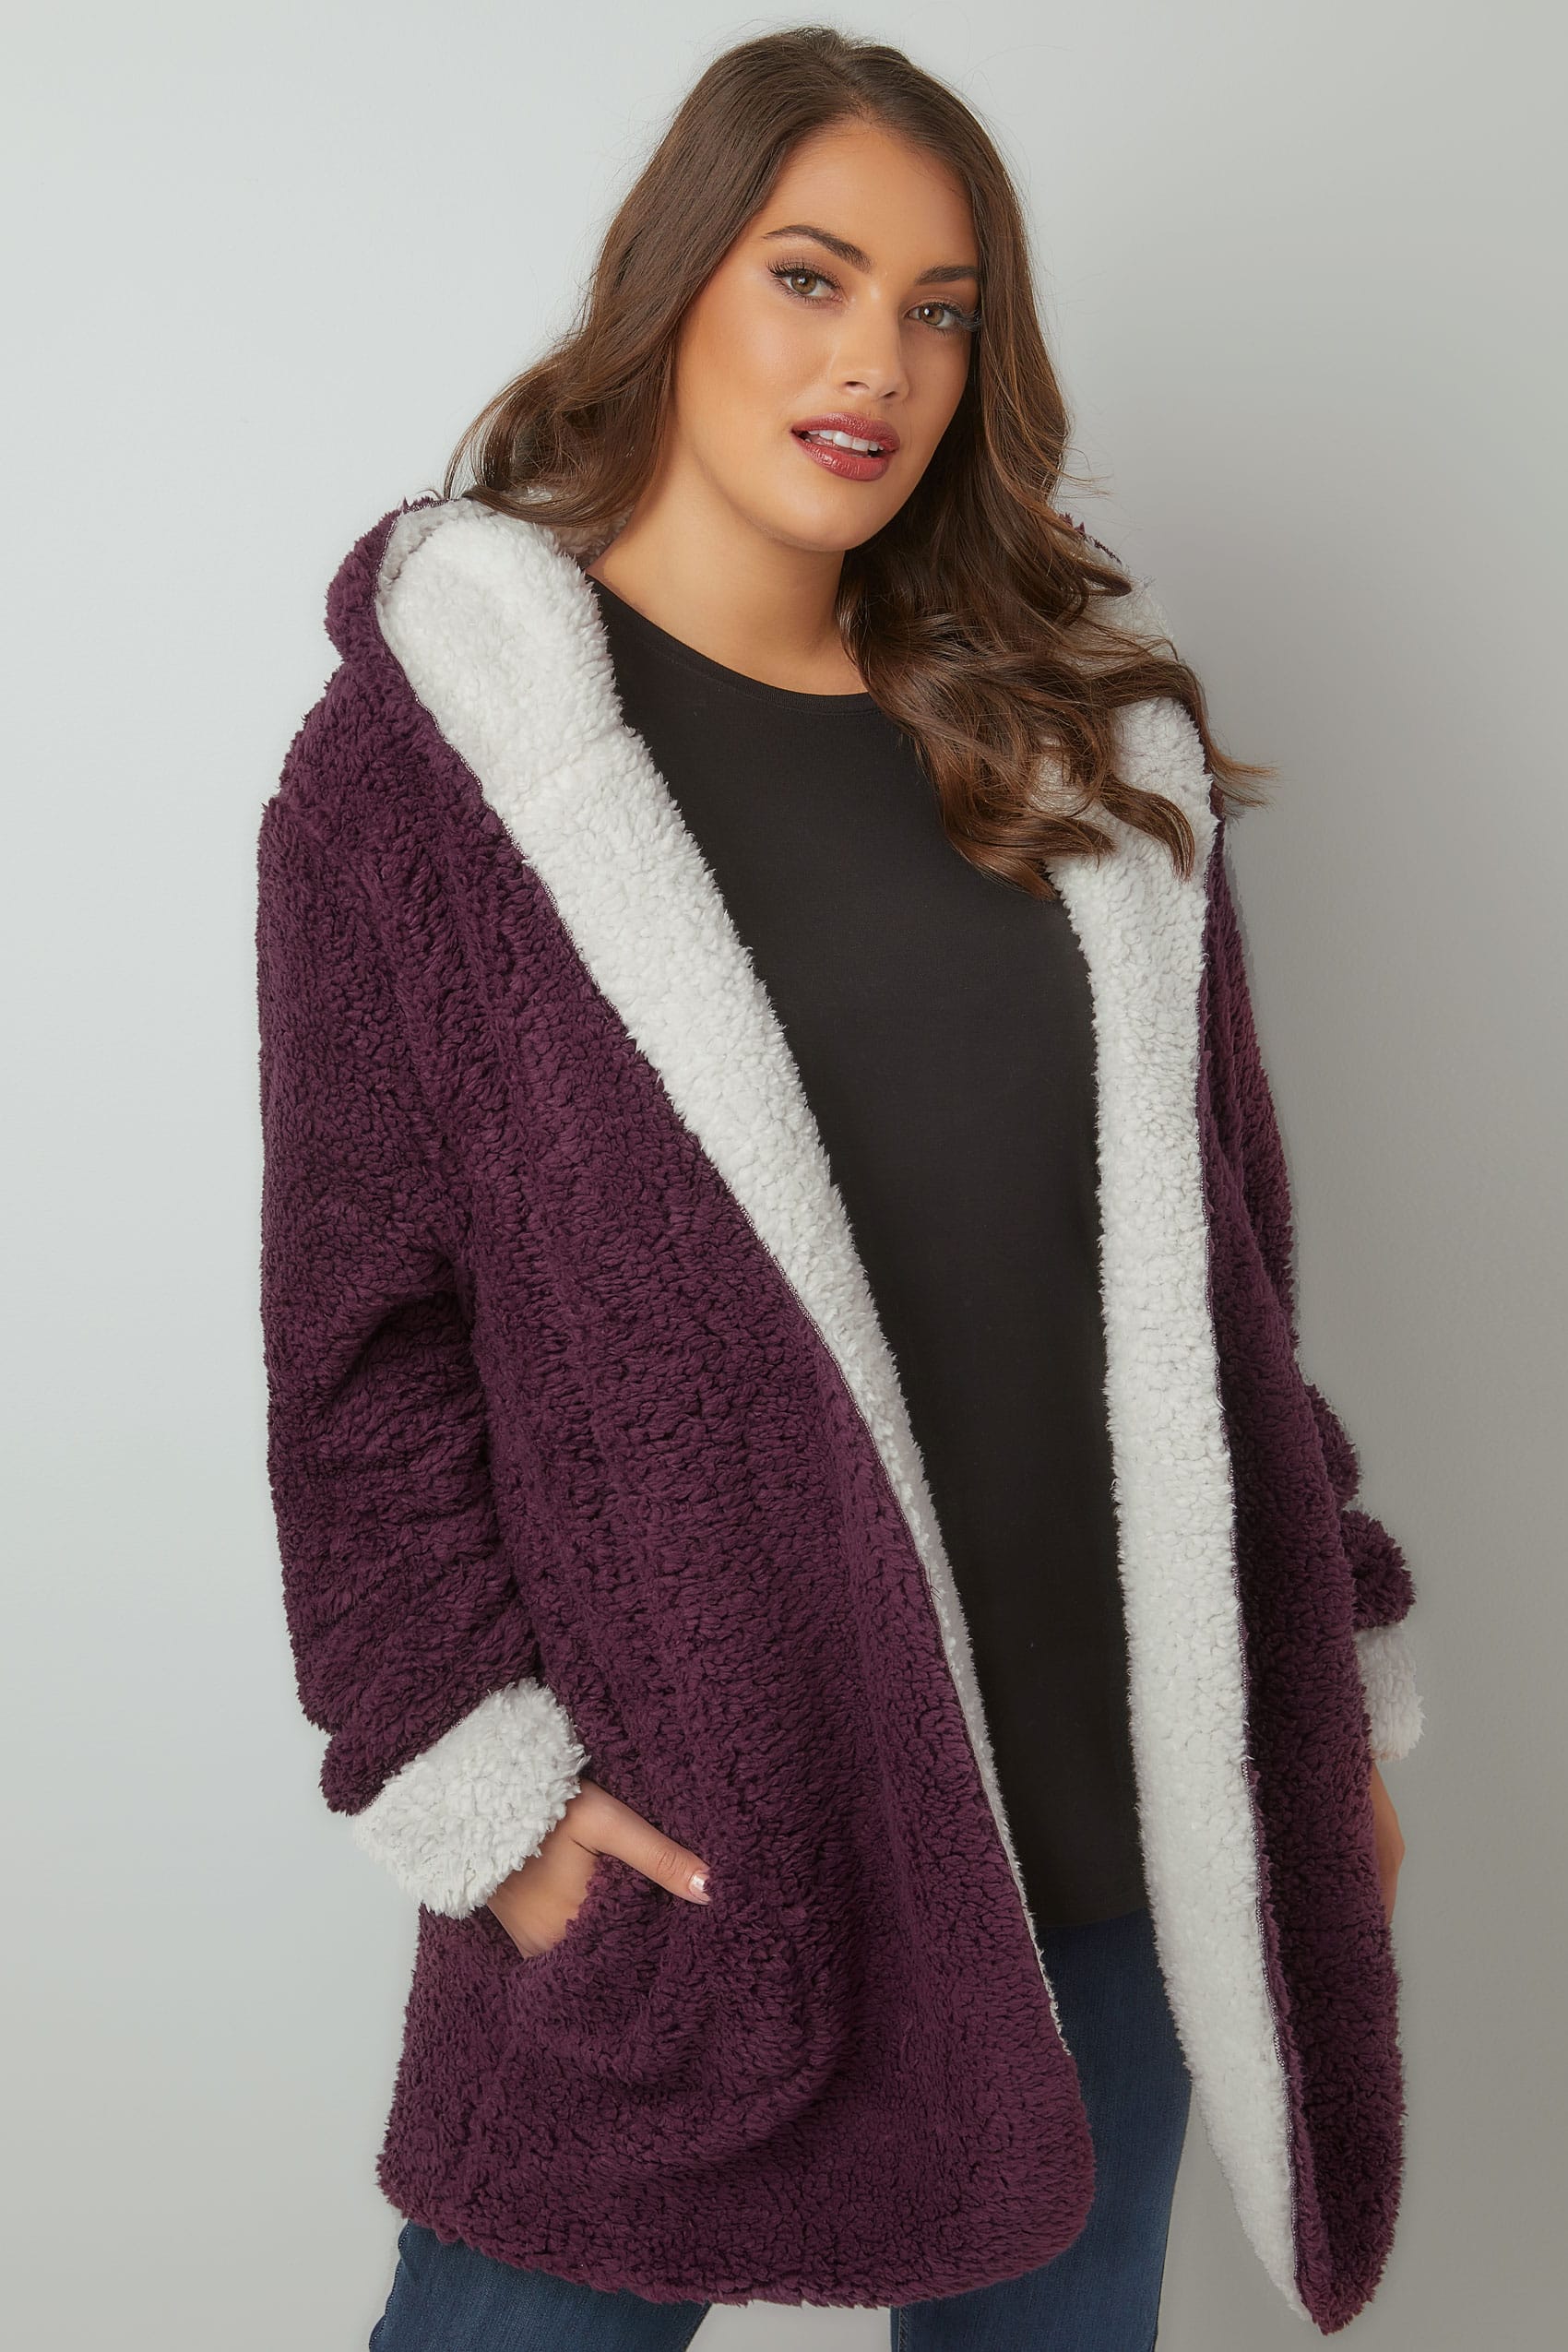 Burgundy Reversible Fleece Coat With Hood, Plus size 16 to 36